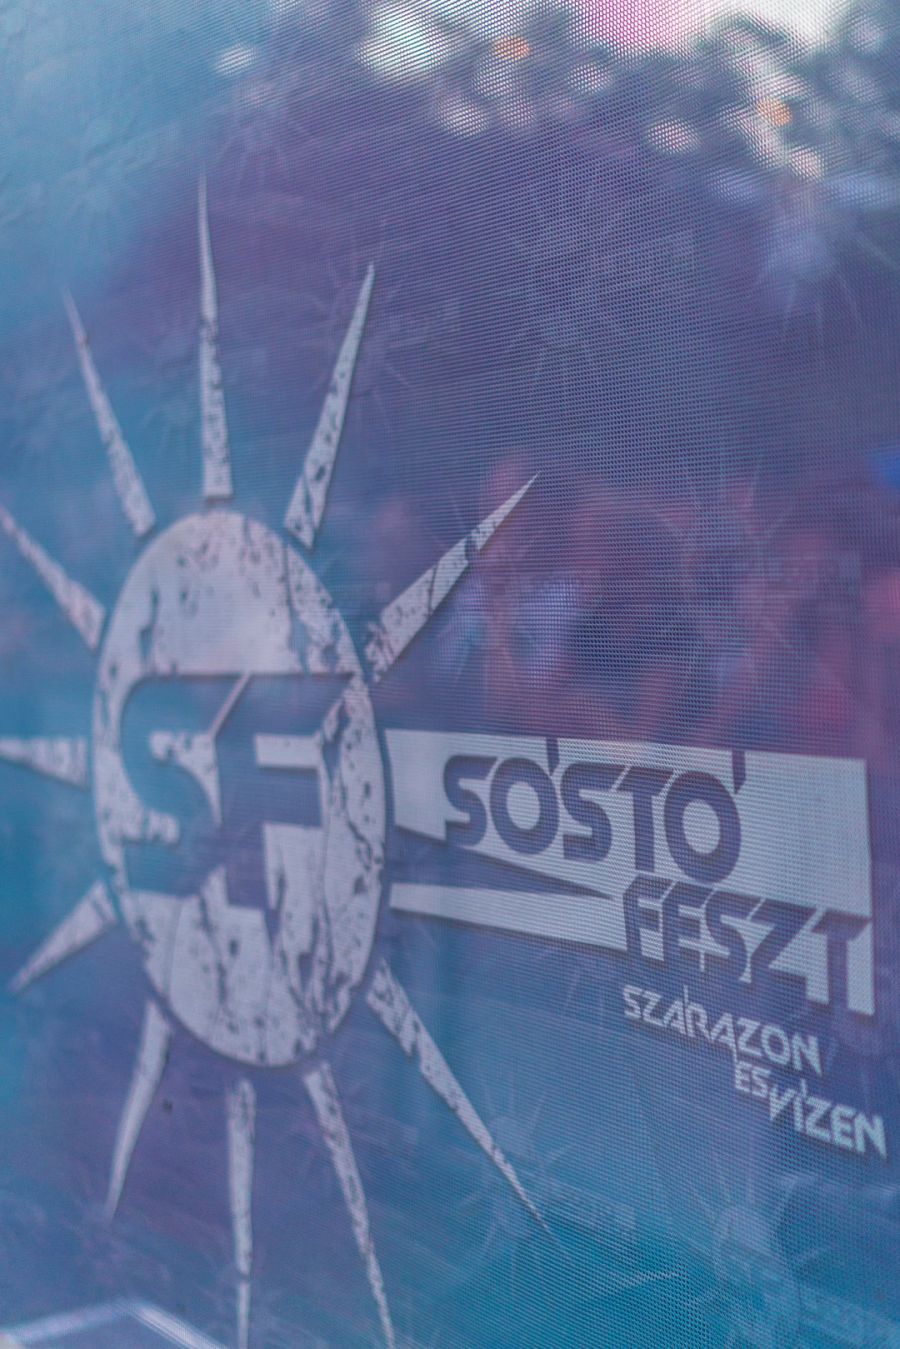 SóstóFeszt 2019